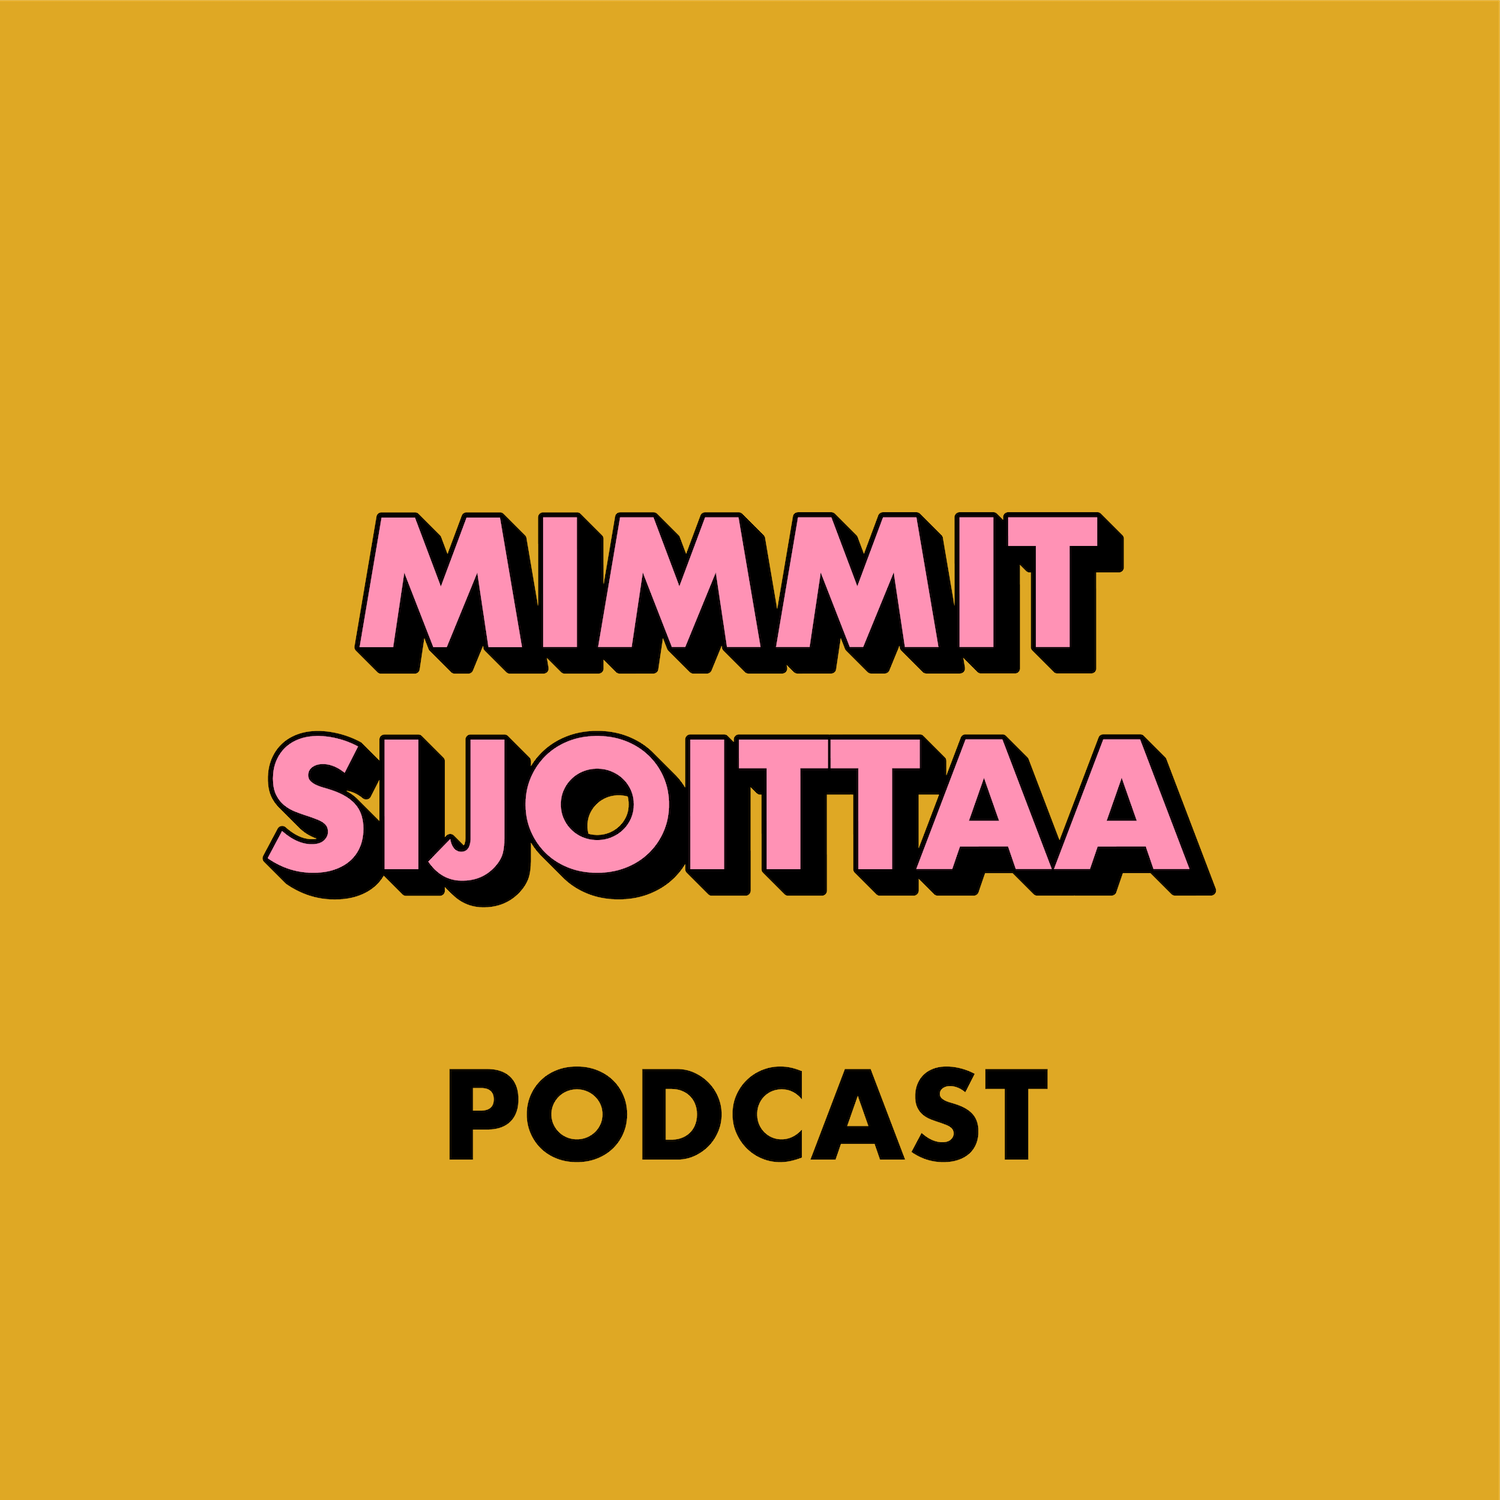 Mimmit sijoittaa - podcast